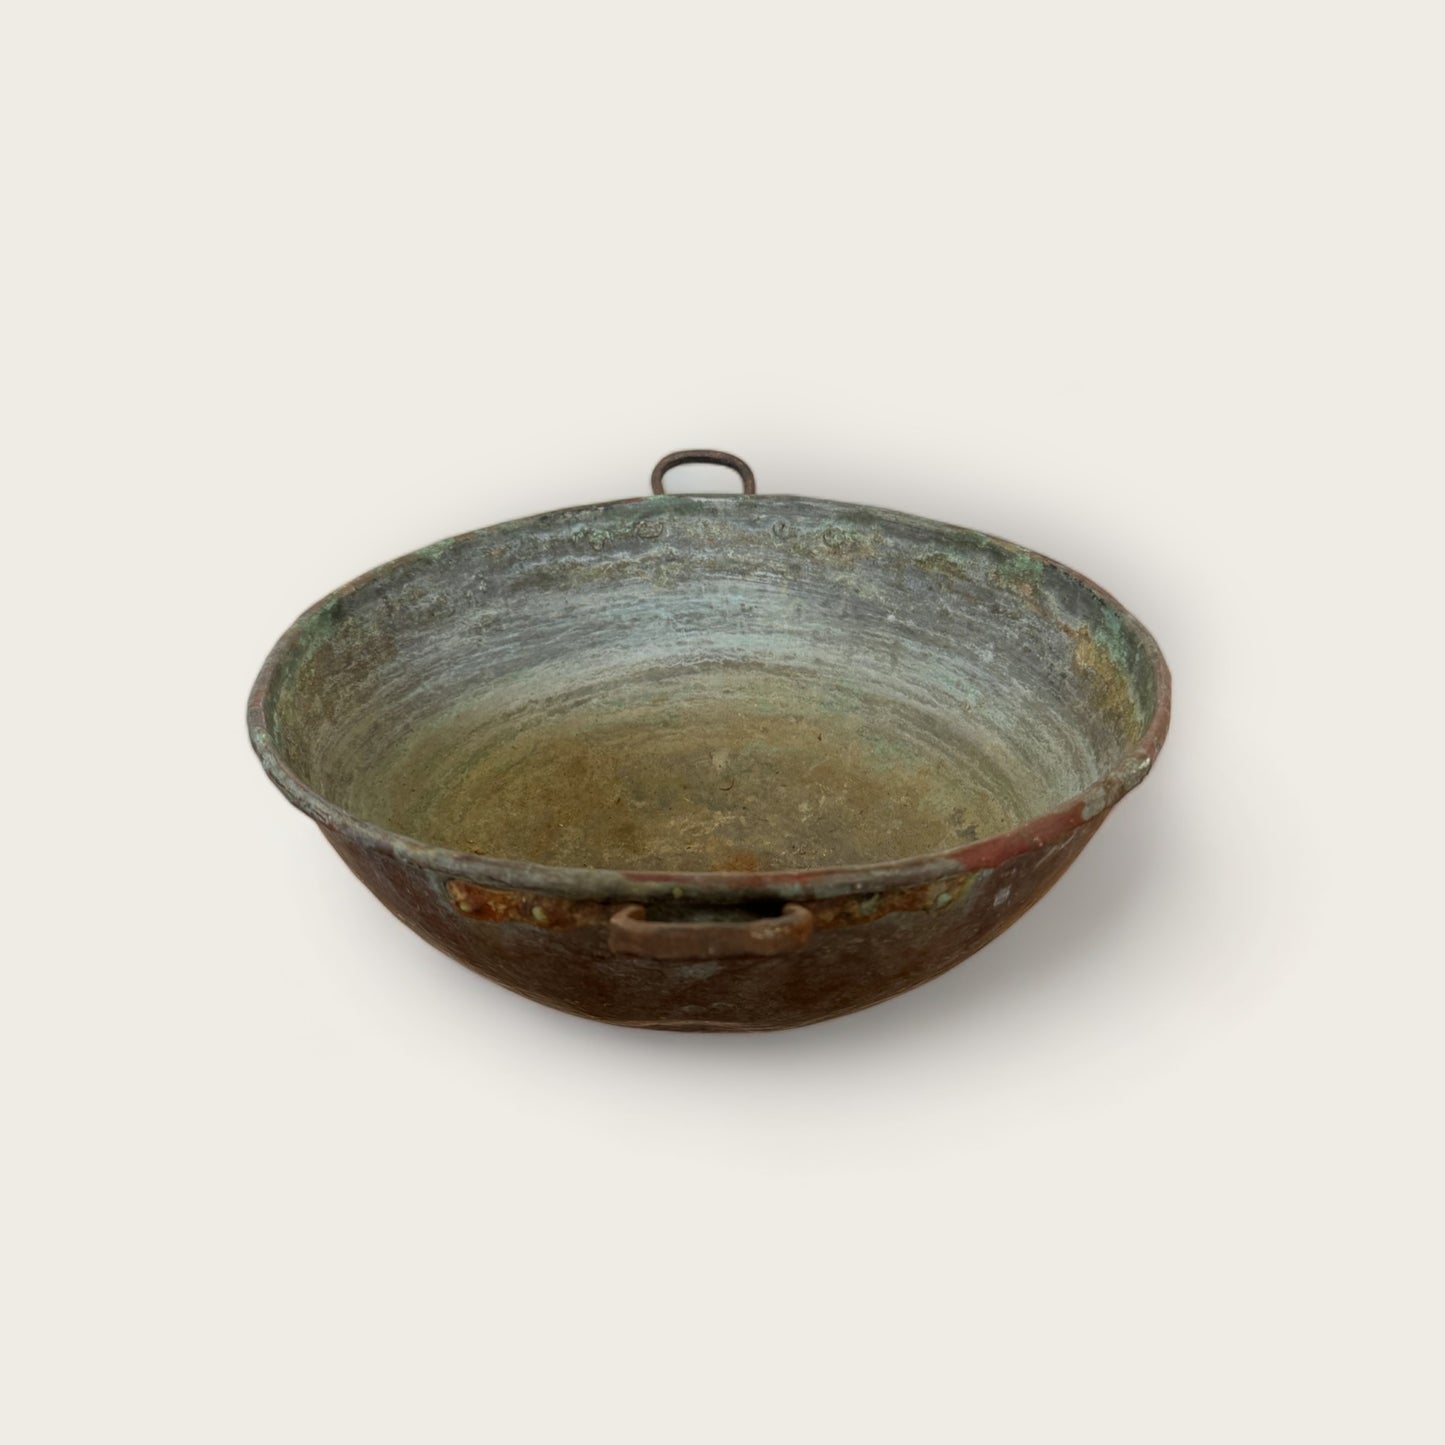 Antique Copper Pot